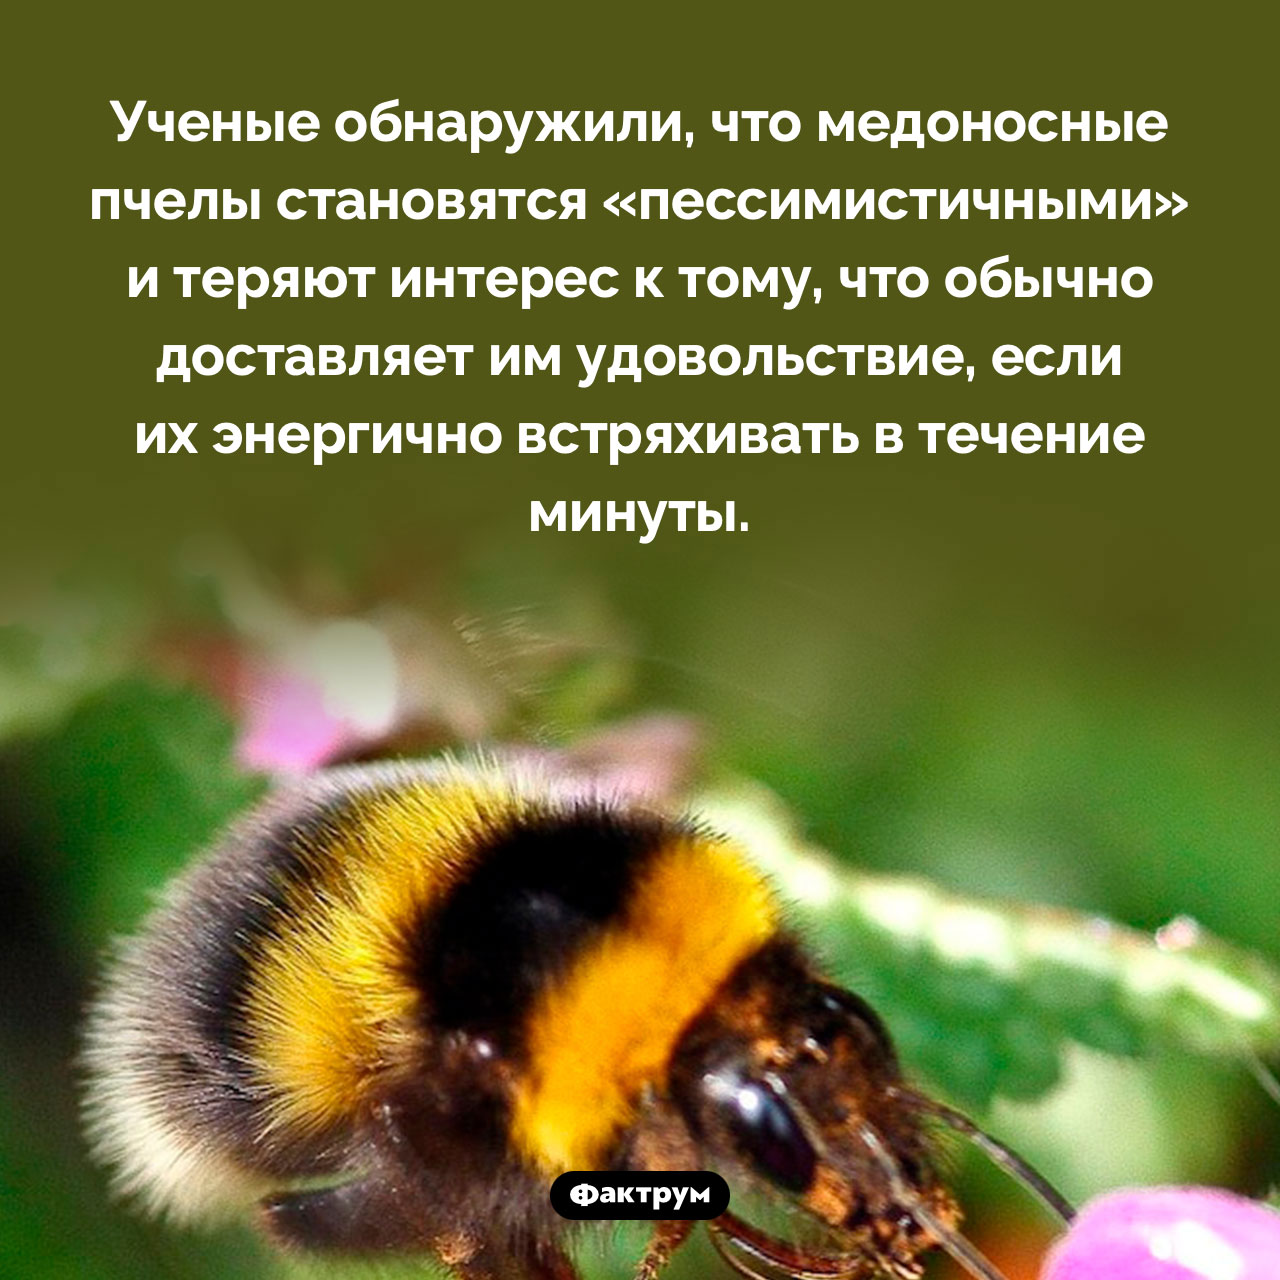 Как заставить пчелу впасть в пессимизм